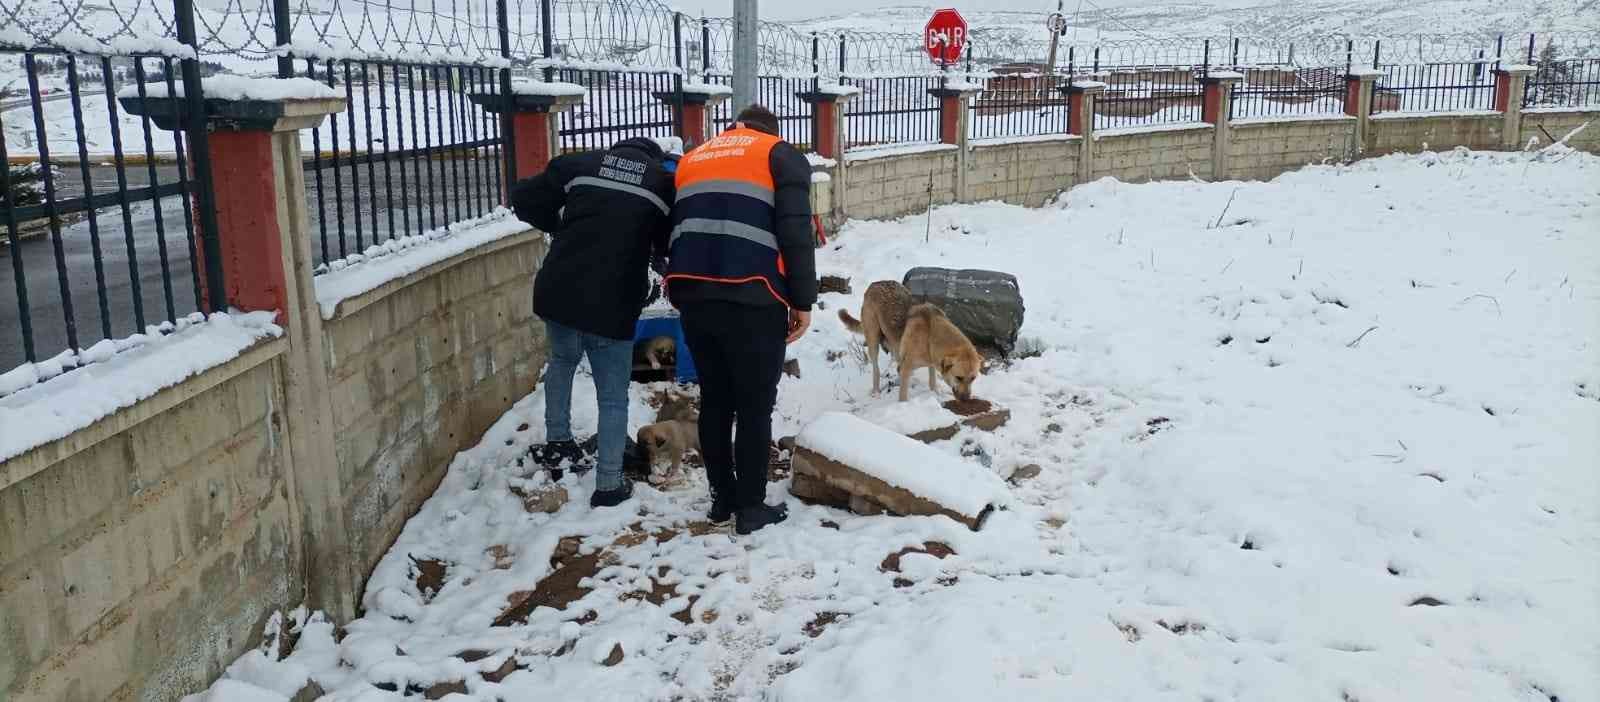 Siirt Belediyesi sokak hayvanları için yem bıraktı #siirt